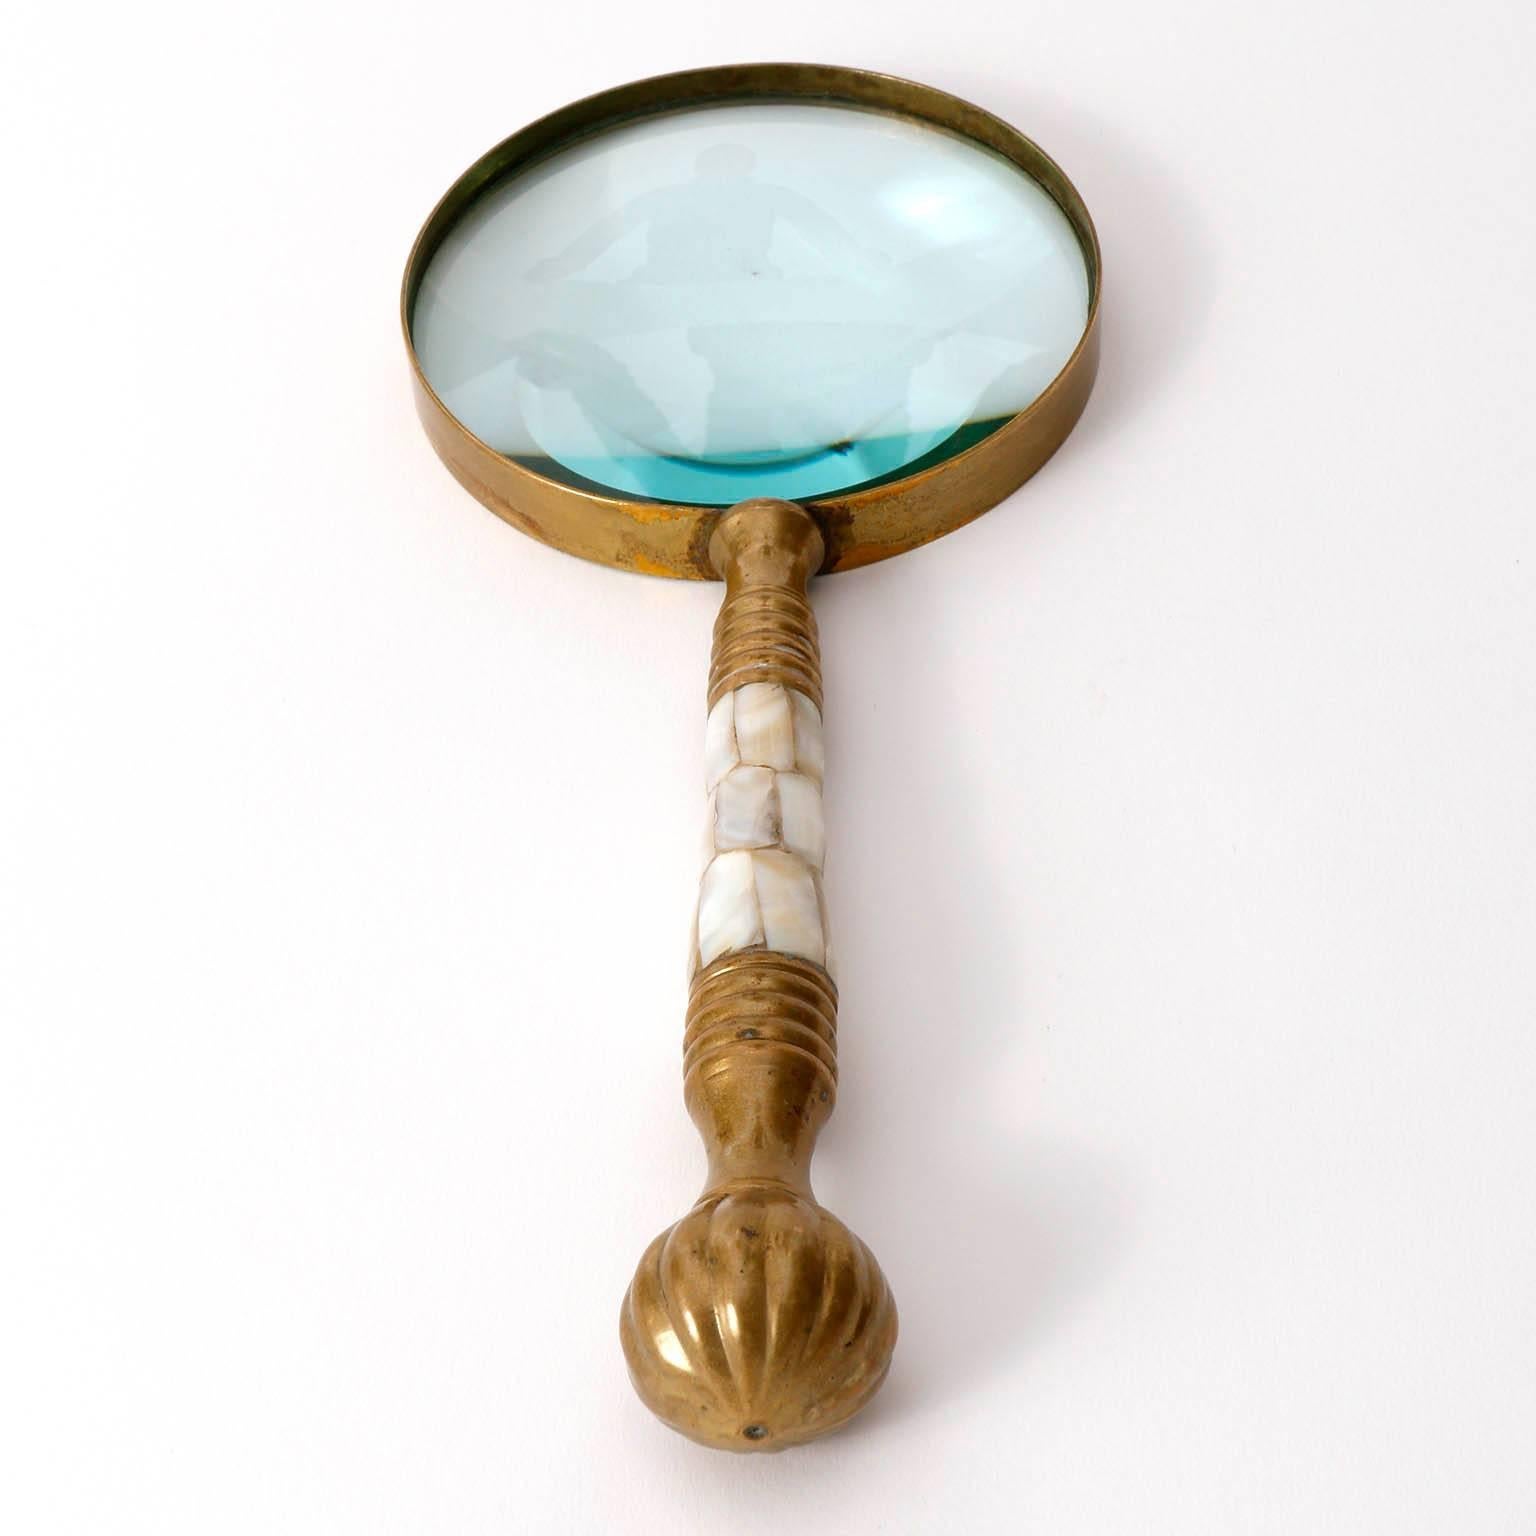 Jugendstil Magnifier Magnifying Glass, Brass Mother-of-Pearl, circa 1900